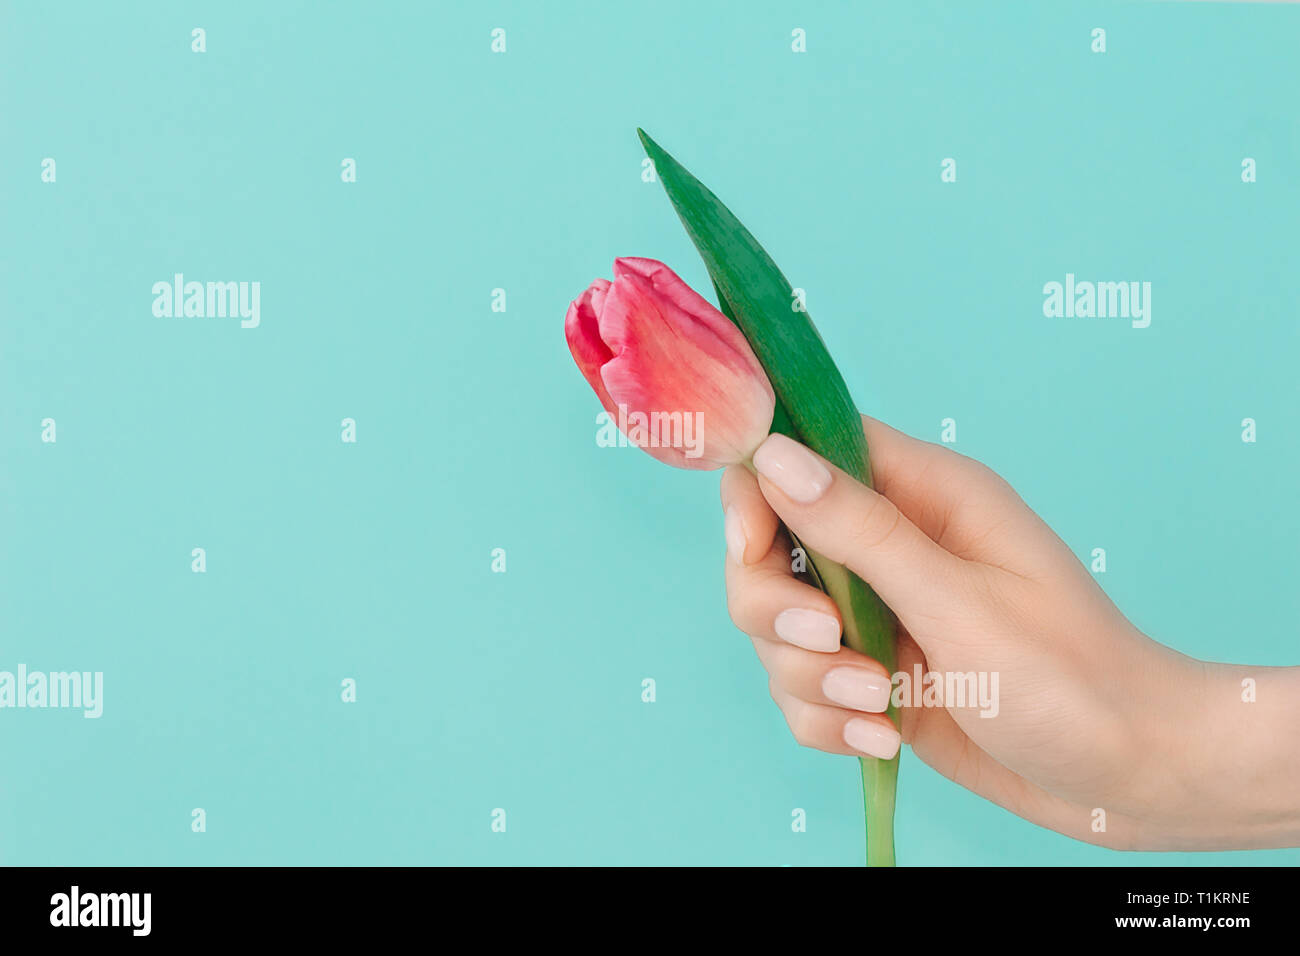 Quartier branché printemps délicat.manucure nail design avec main de femme sur fond bleu clair turquiose holding tulipe rose fleur. Copier l'espace. Banque D'Images